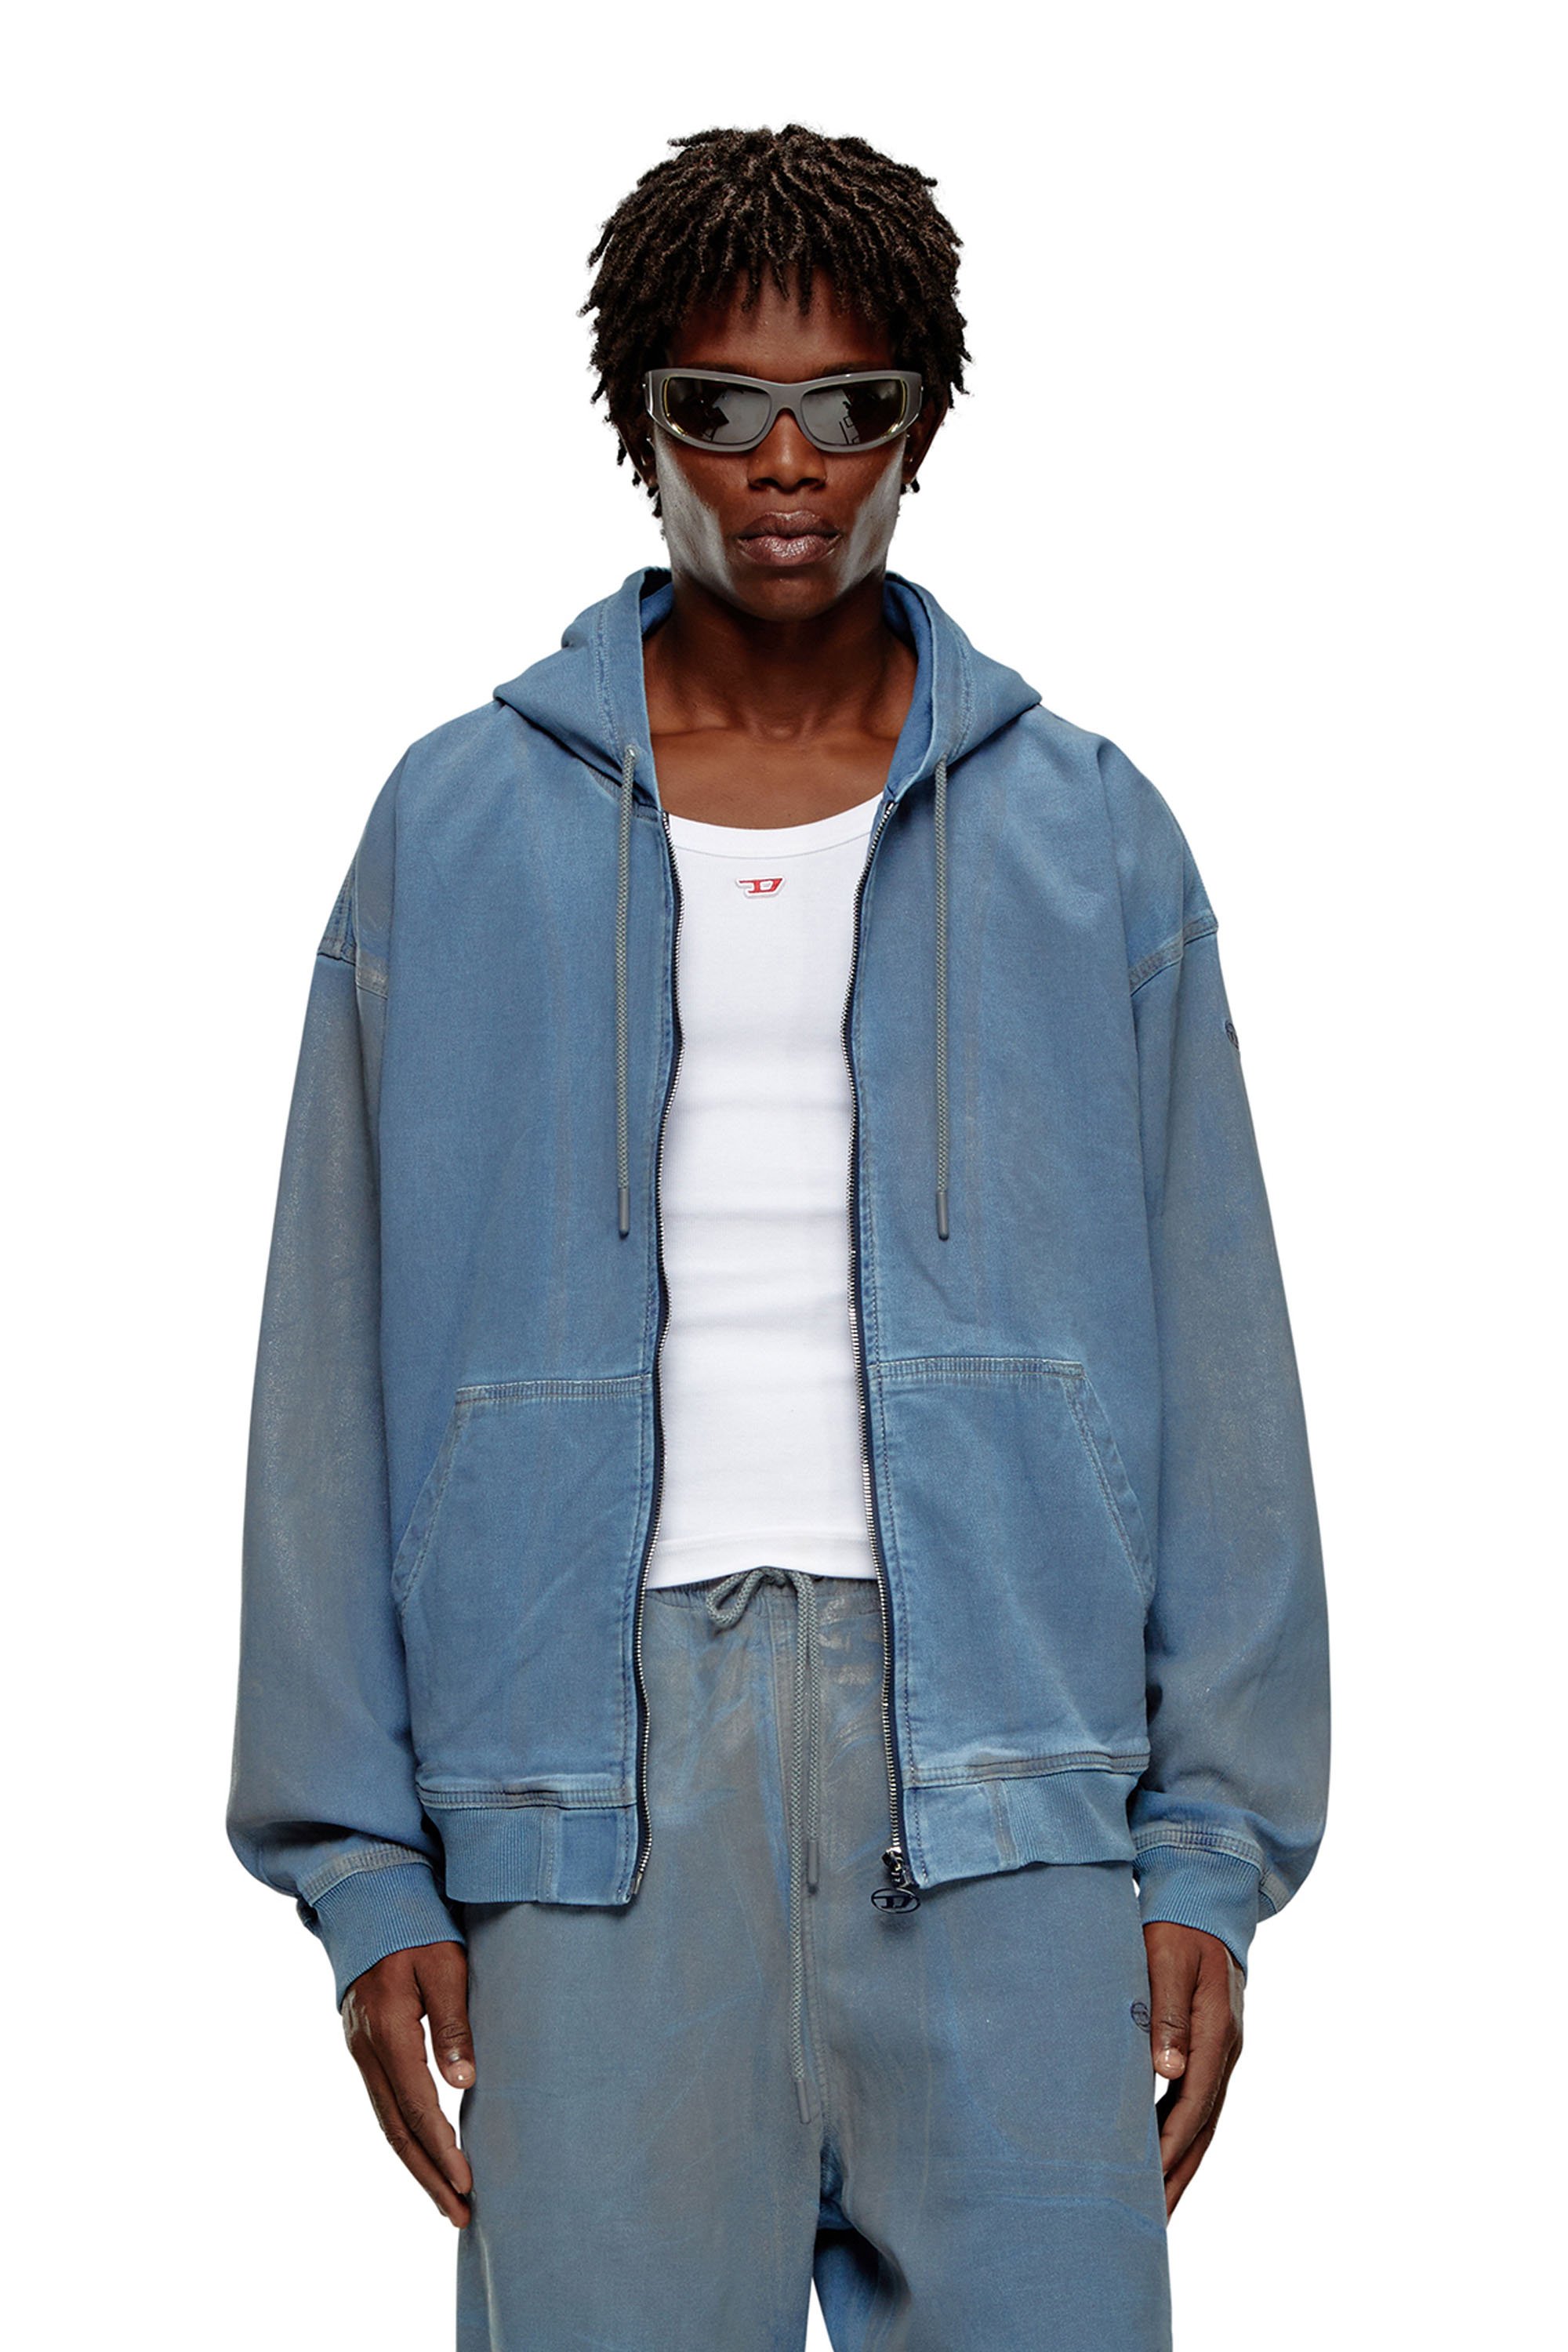 Diesel - Sweat-shirt à capuche zippé en Track Denim imprimé - Pull Cotton - Homme - Bleu